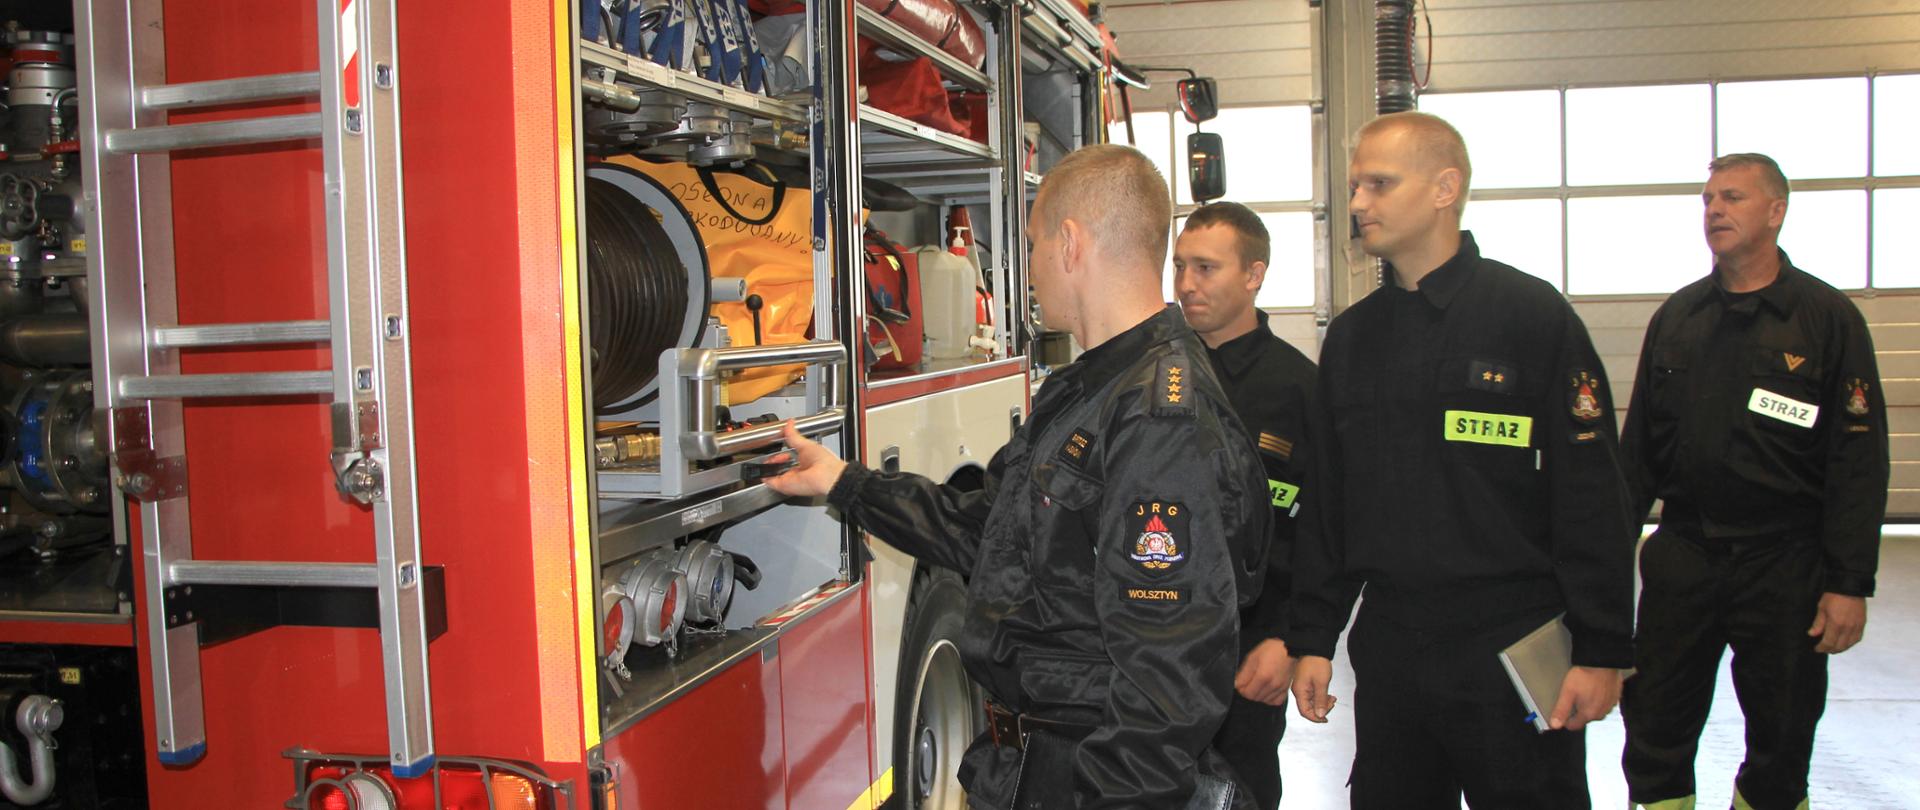 Strażacy w mundurach przeglądają sprzęt i pojazdy pożarnicze stojące w garażu.